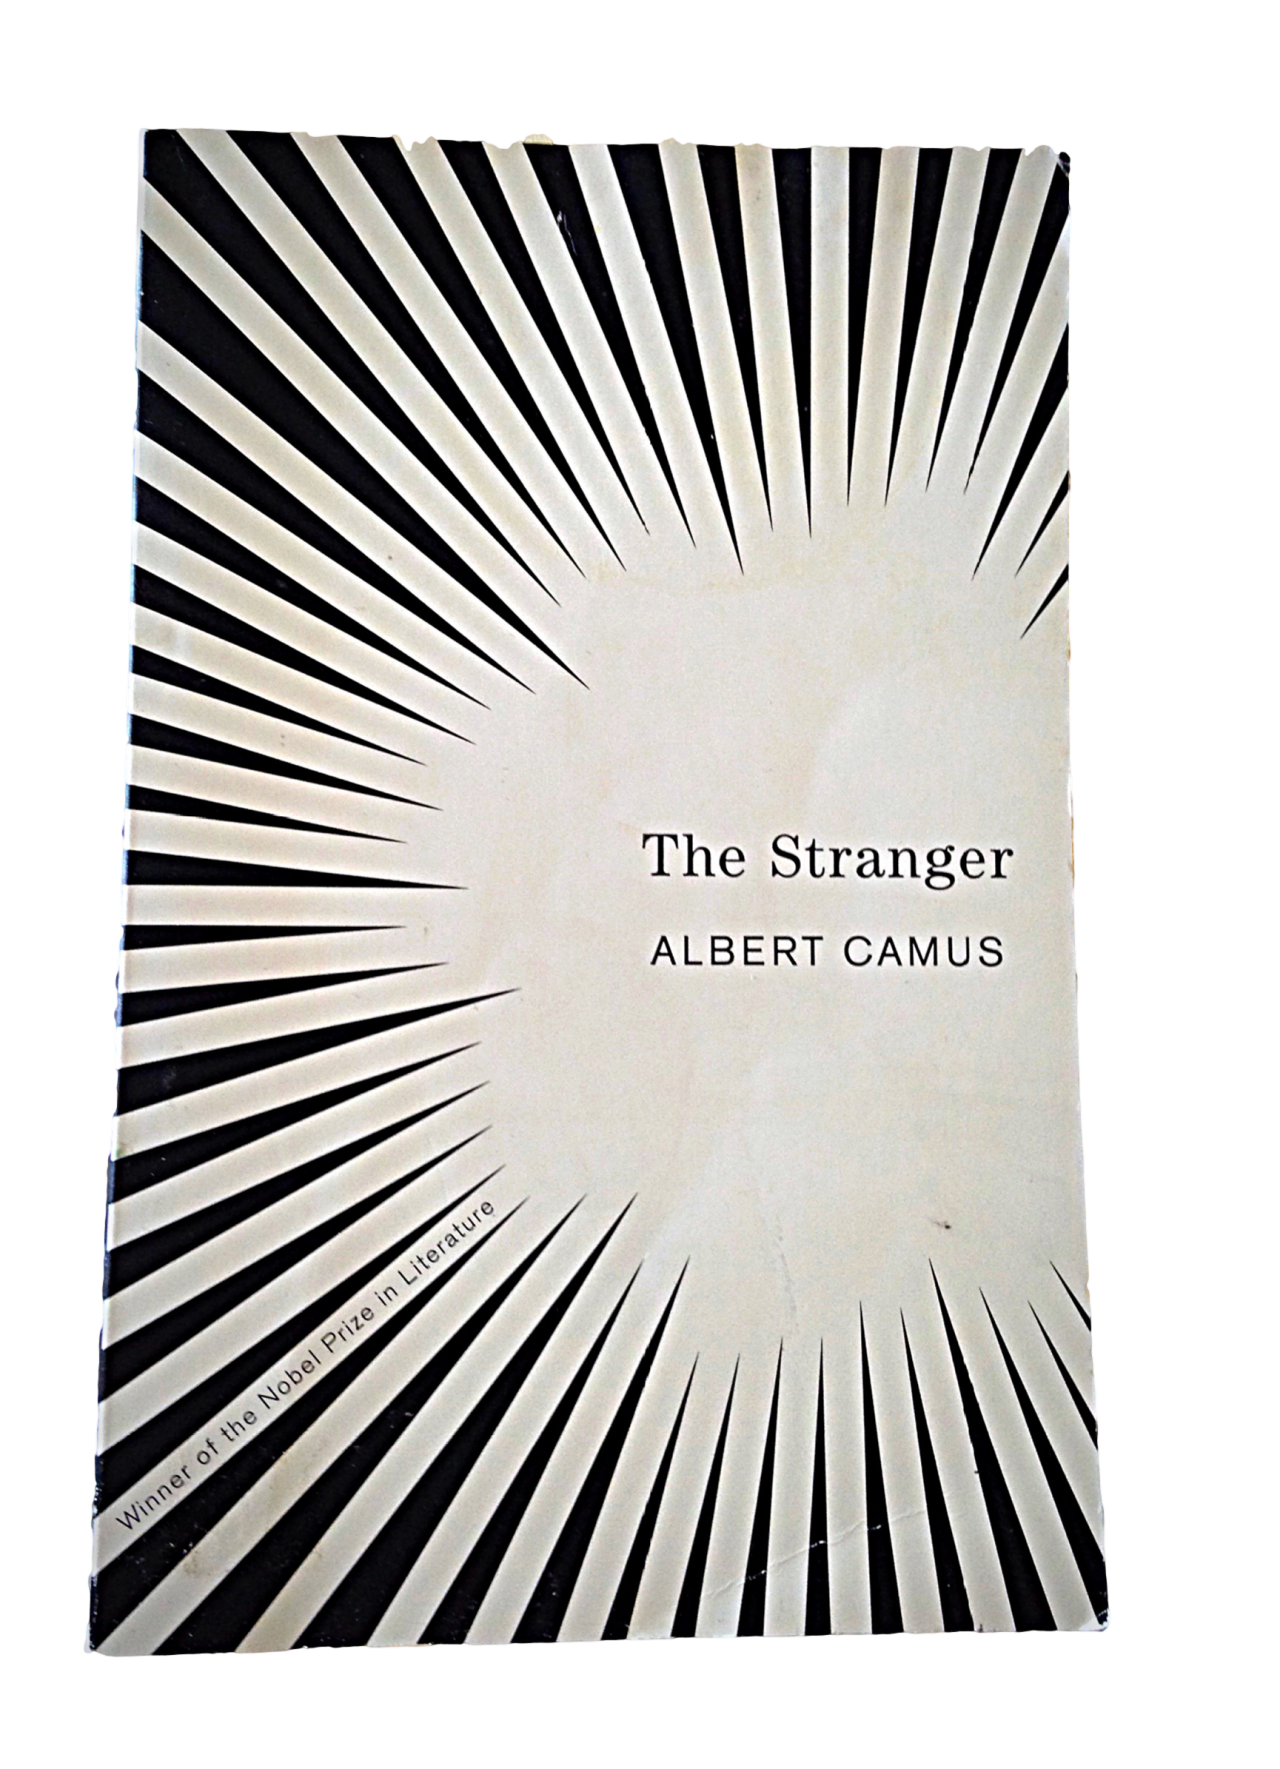 Fleksibel Hårdhed bitter Camus 'The Stranger' Book Cover Design | Digital Humanities